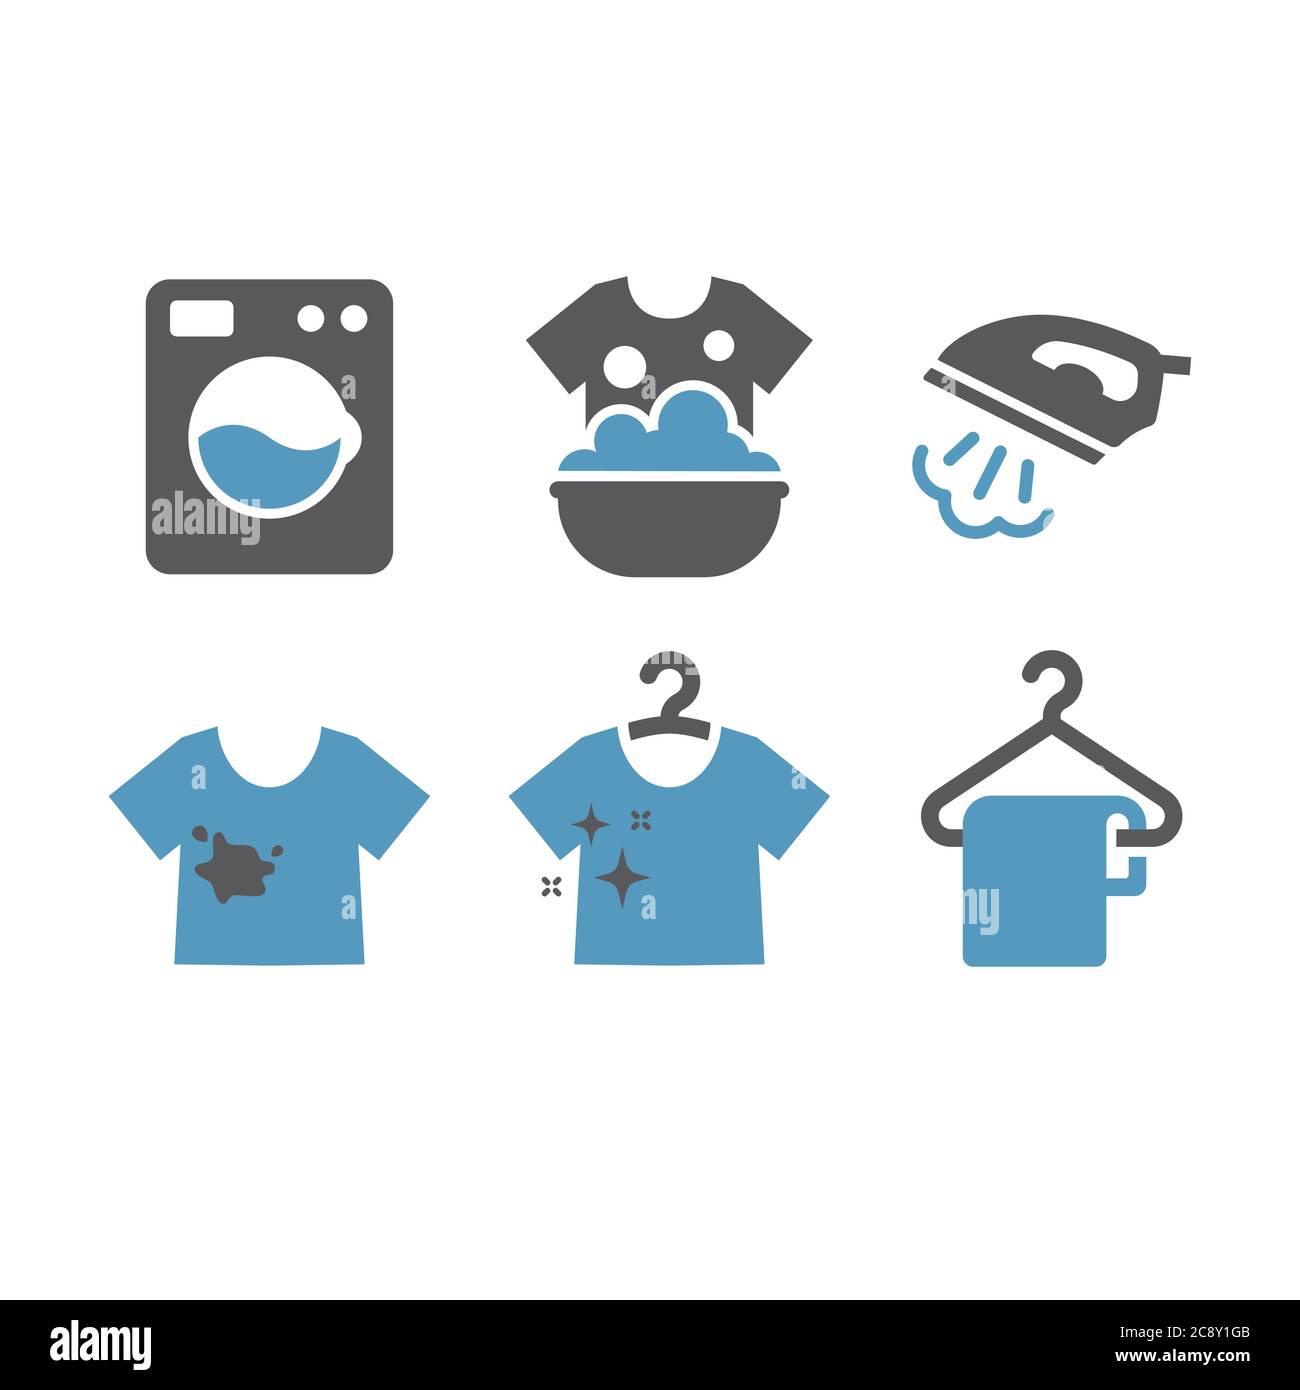 Icons, Wäsche, Bügeleisen, Maschine, Service, Waschen, Reinigen, trocken, Piktogramm, Glyphe, Icon, Bügeln, Dampf, Bluse, Aufhänger, Hand, T-Shirt, T-Shirt, schwarz, Stock Vektor